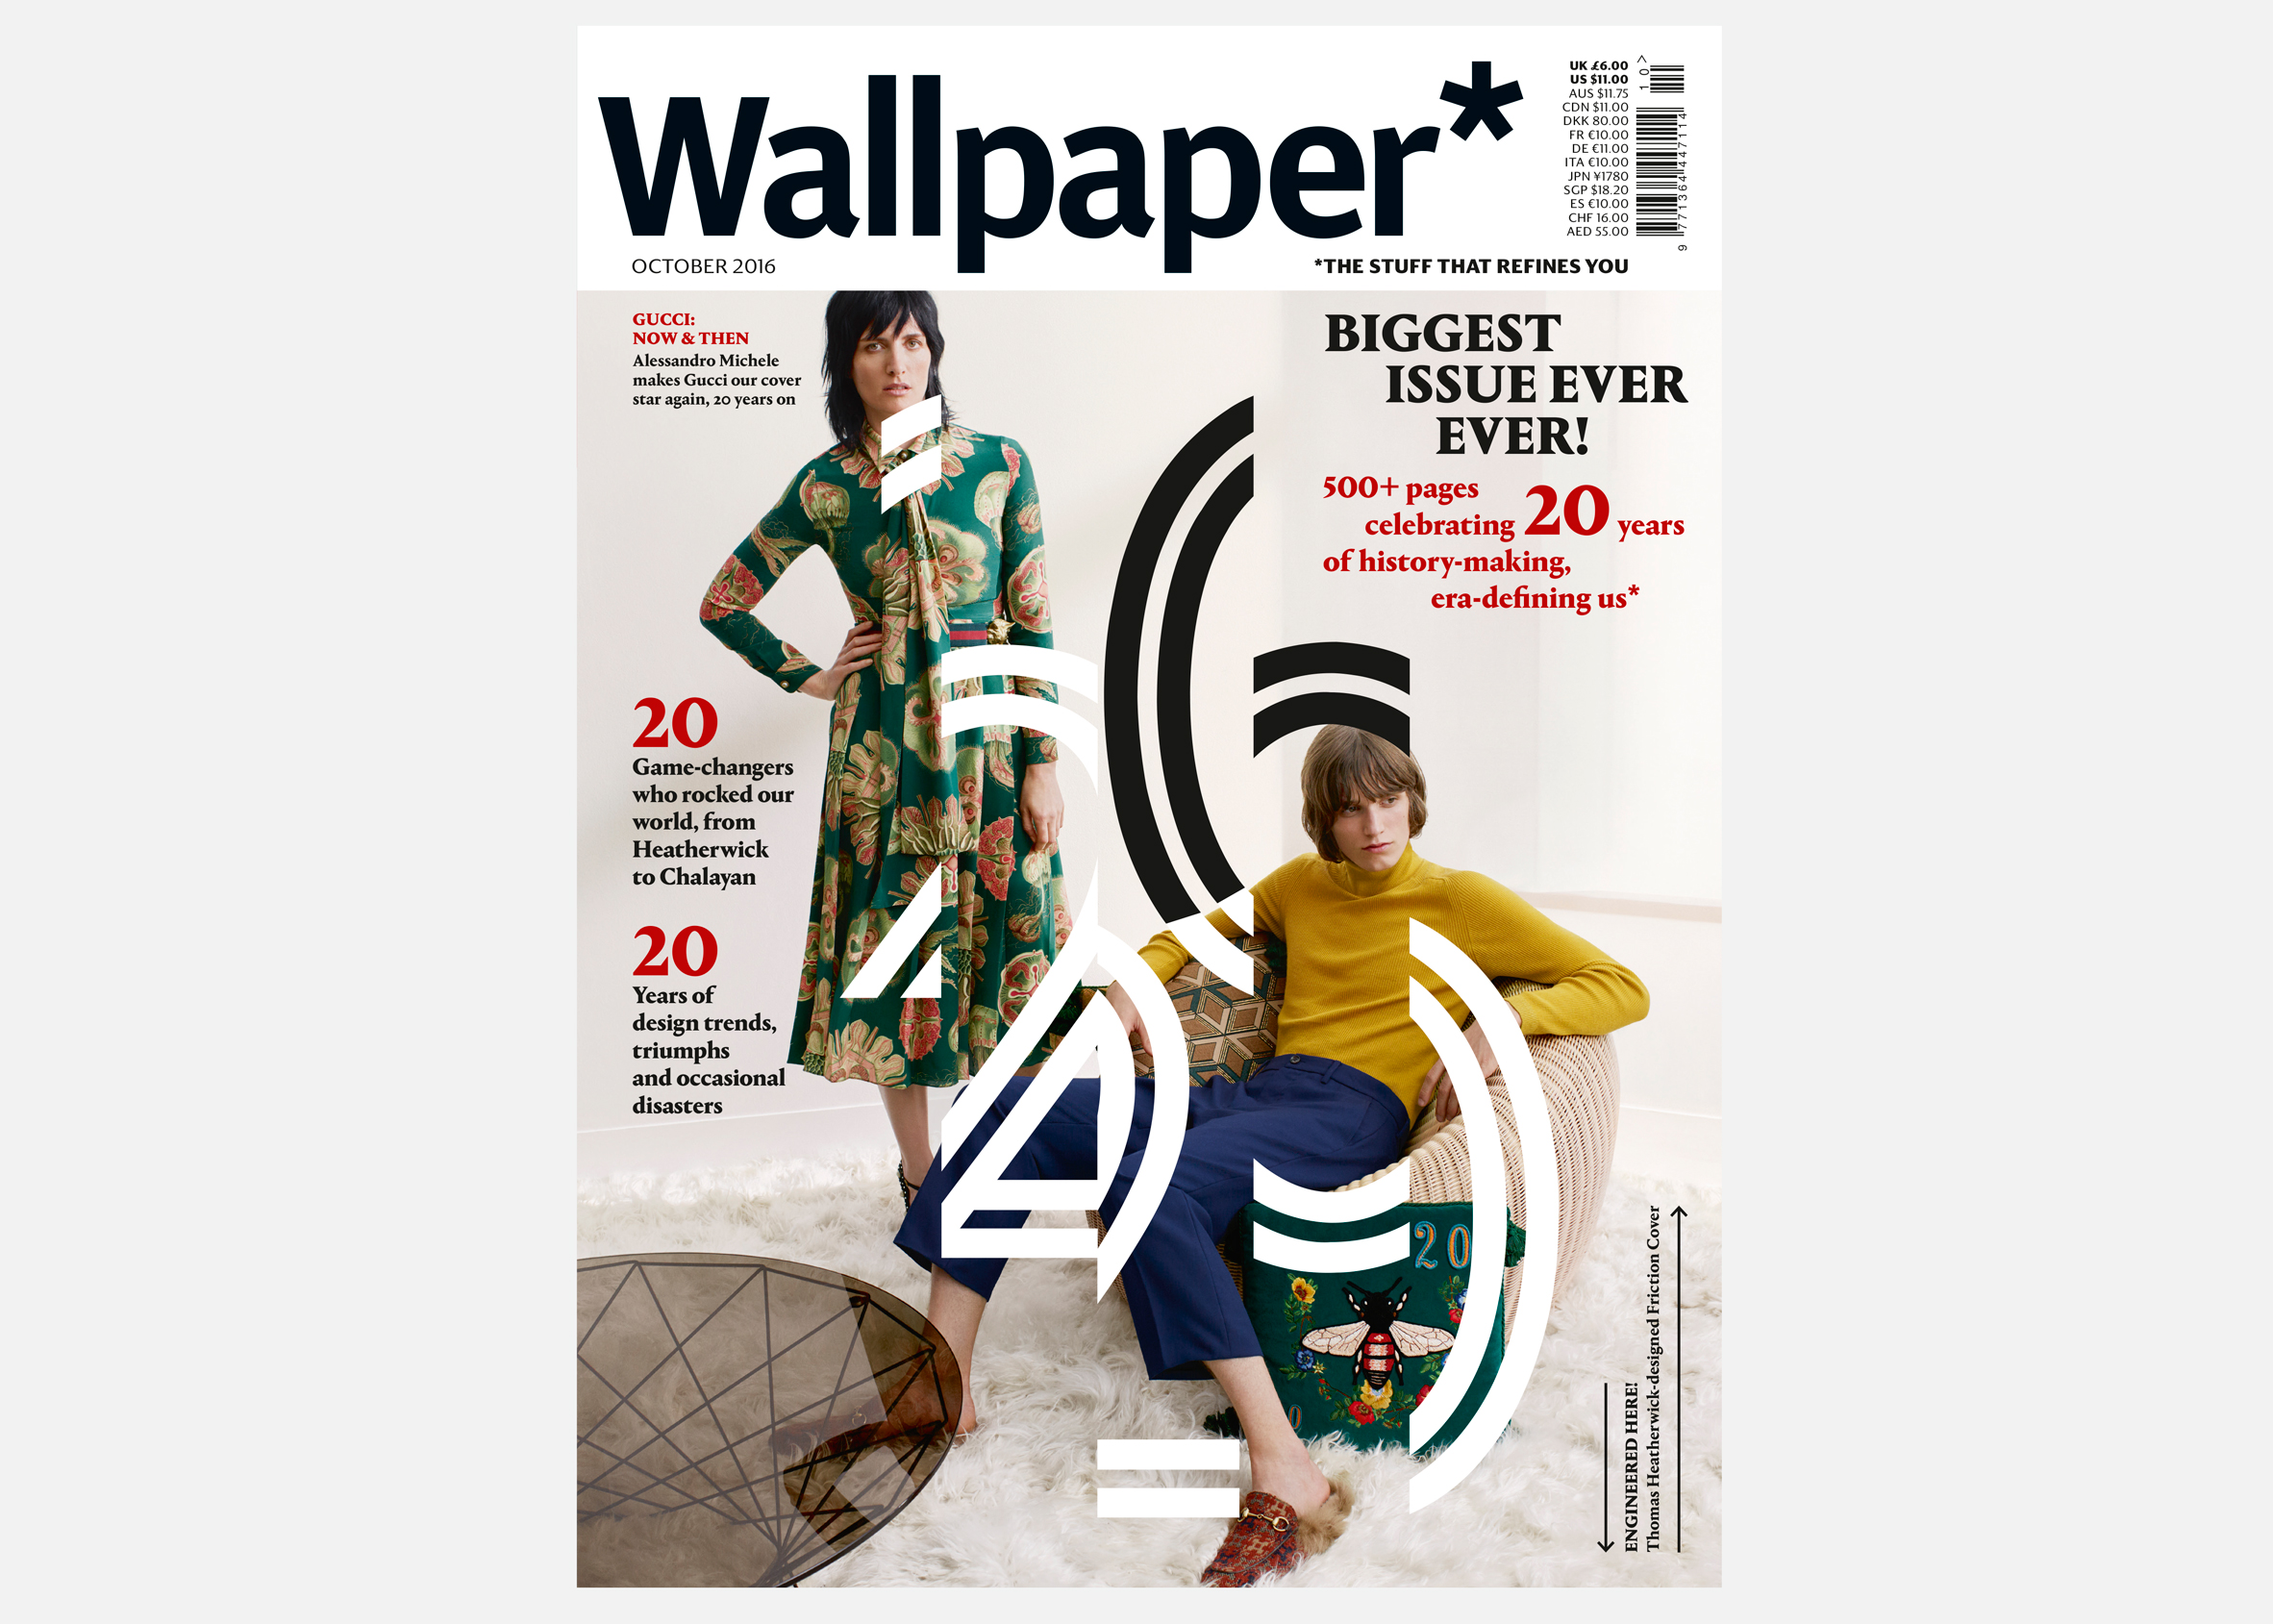 Heatherwick Designs Magazine Cover For Wallpaper S 20th Anniversary